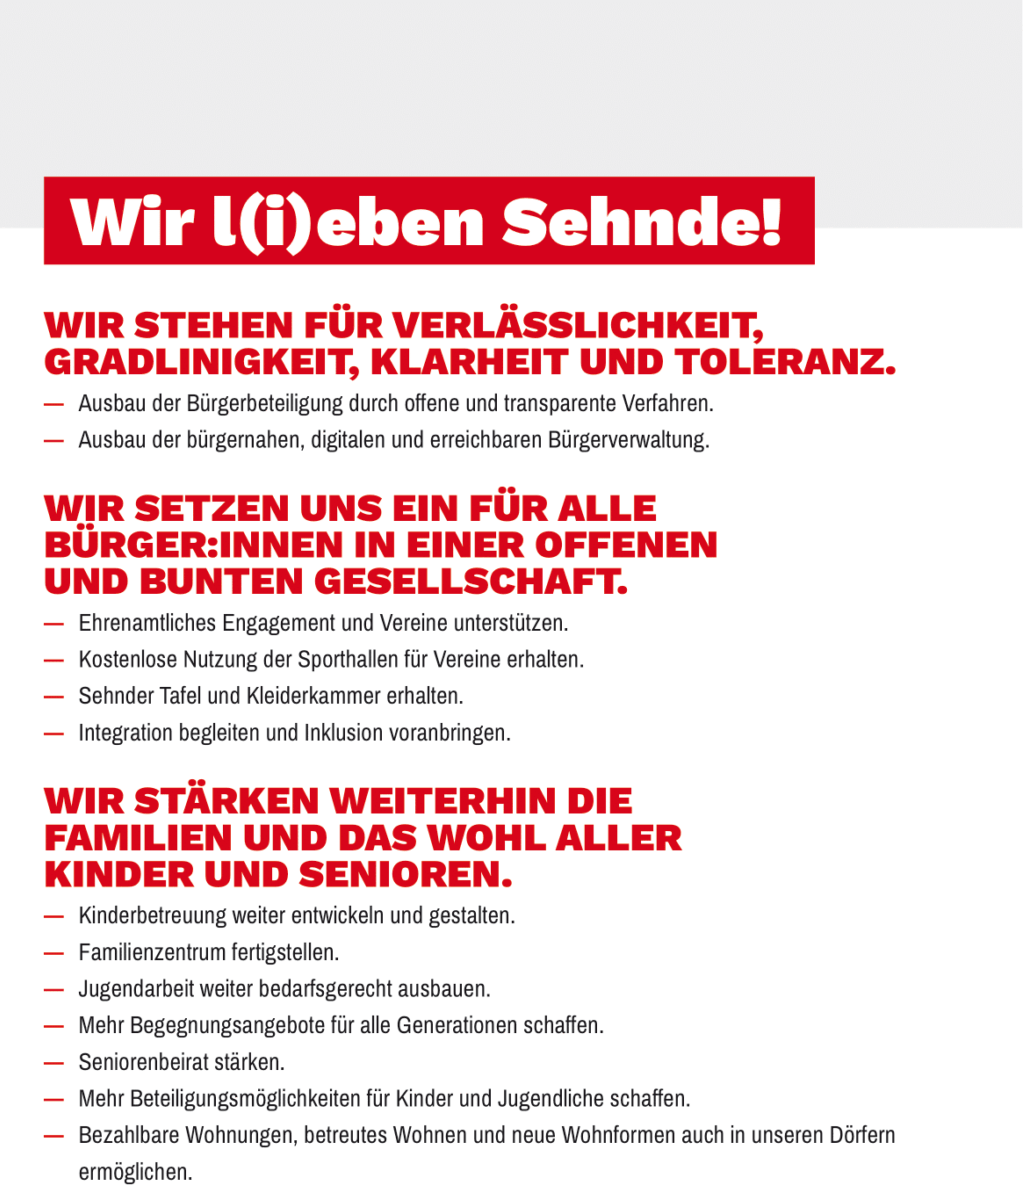 Wahlprogramm SPD Sehnde